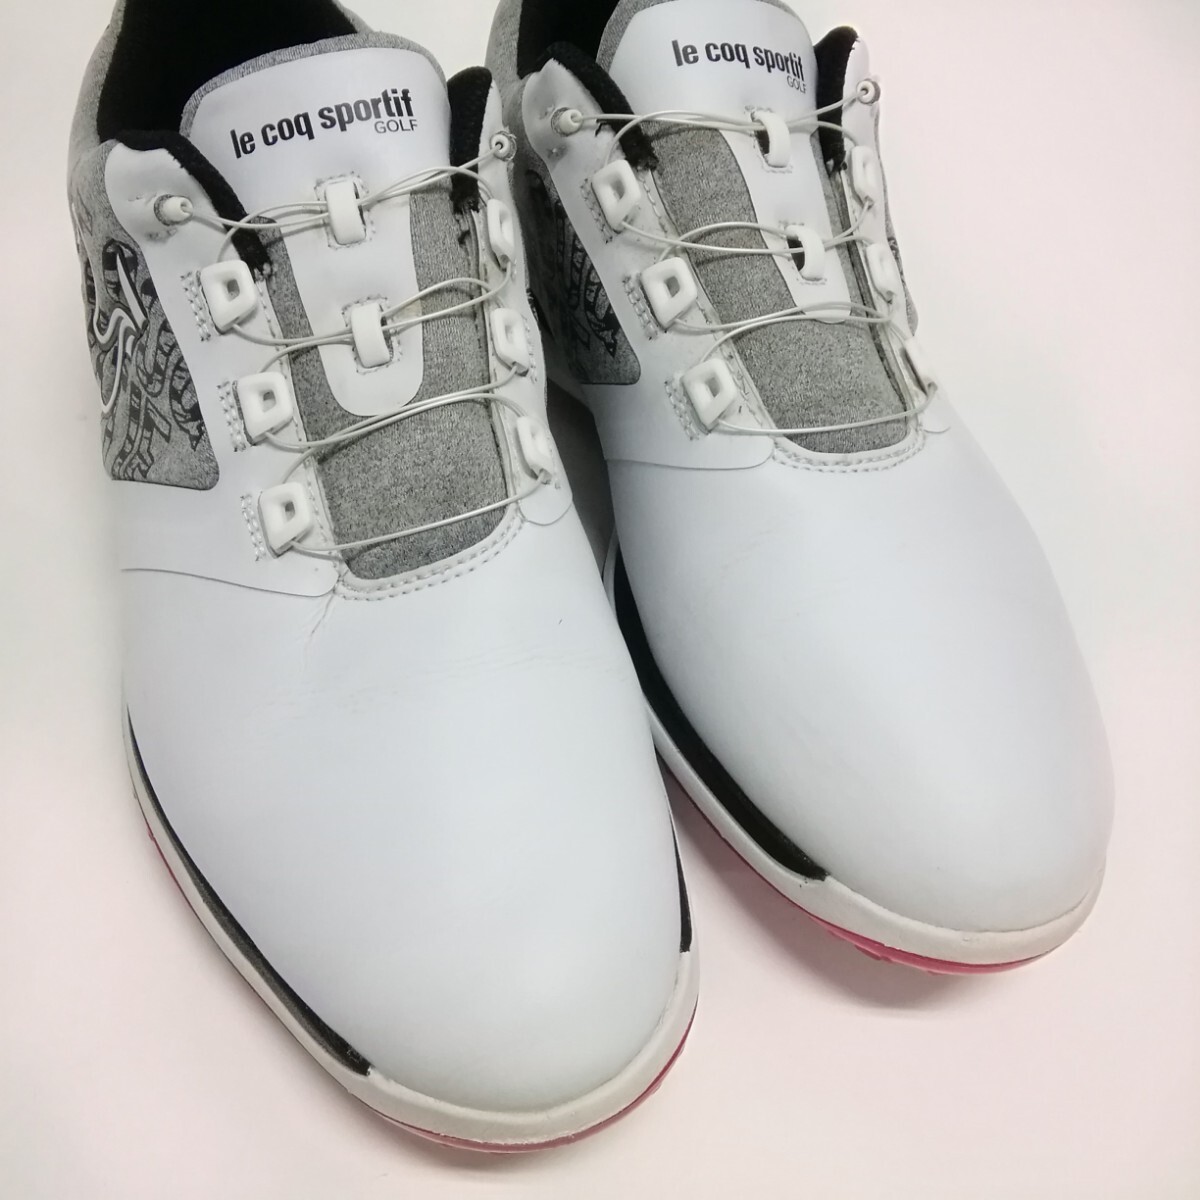 le coq sportif GOLF Le Coq s Porte .f golf shoes shoes 26.5cm white spike dial type 